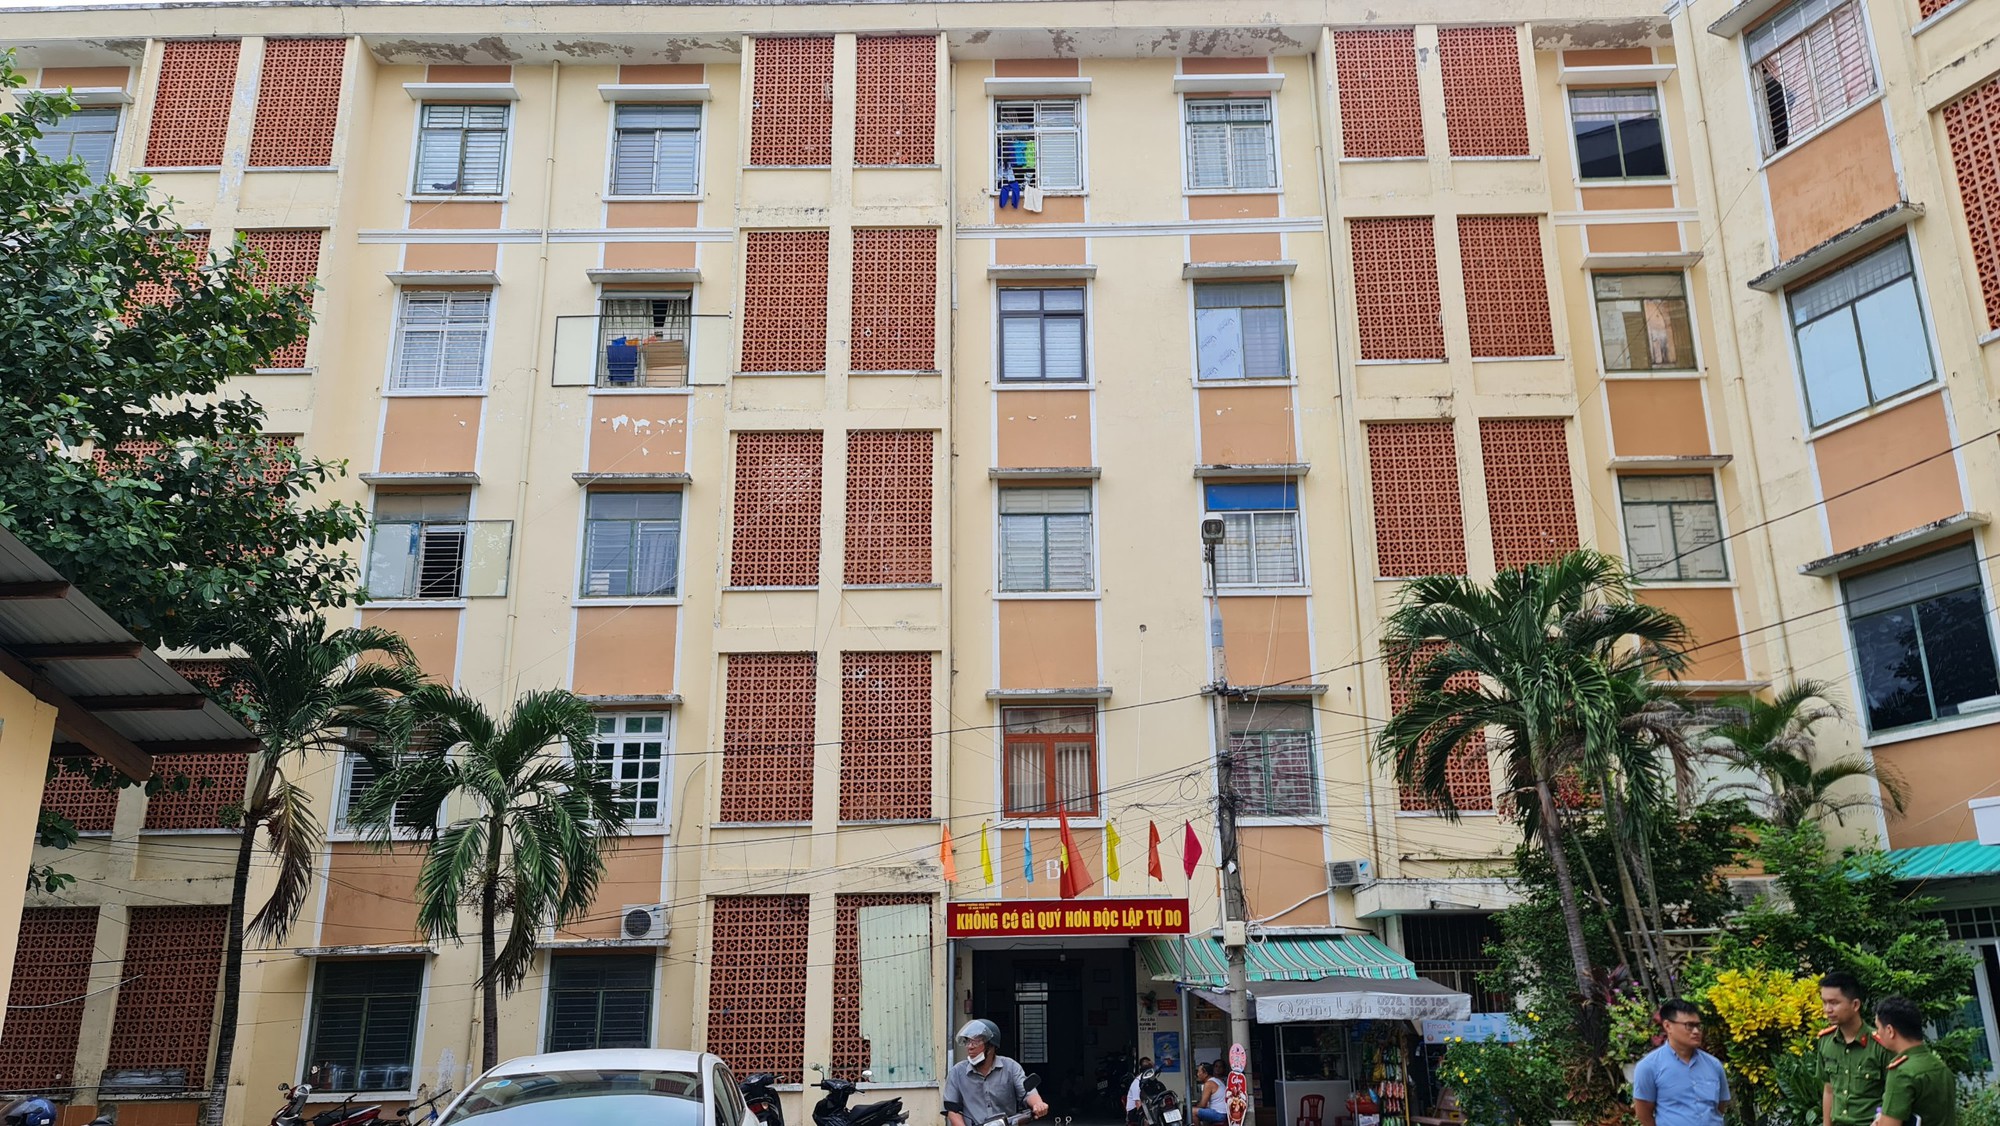 Kiểm tra PCCC của hàng nghìn chung cư, nhà trọ tại Đà Nẵng  - Ảnh 8.